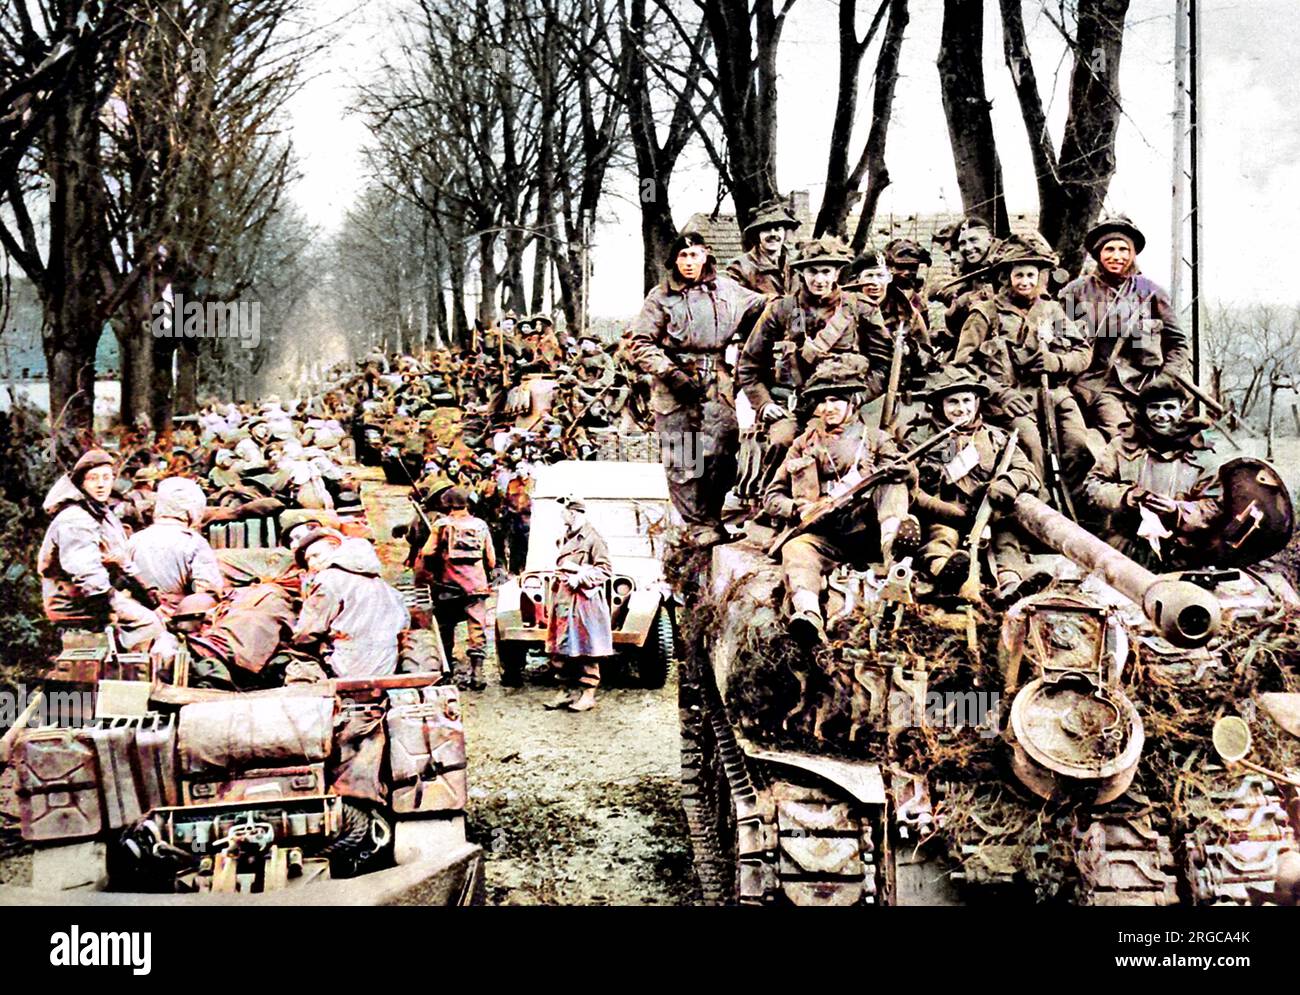 Fanteria britannica che cavalca su carri armati Sherman verso l'area del Reichswald, Germania, febbraio 1945. A sinistra della fotografia, le pistole anticarro e i loro equipaggi possono essere visti. Foto Stock